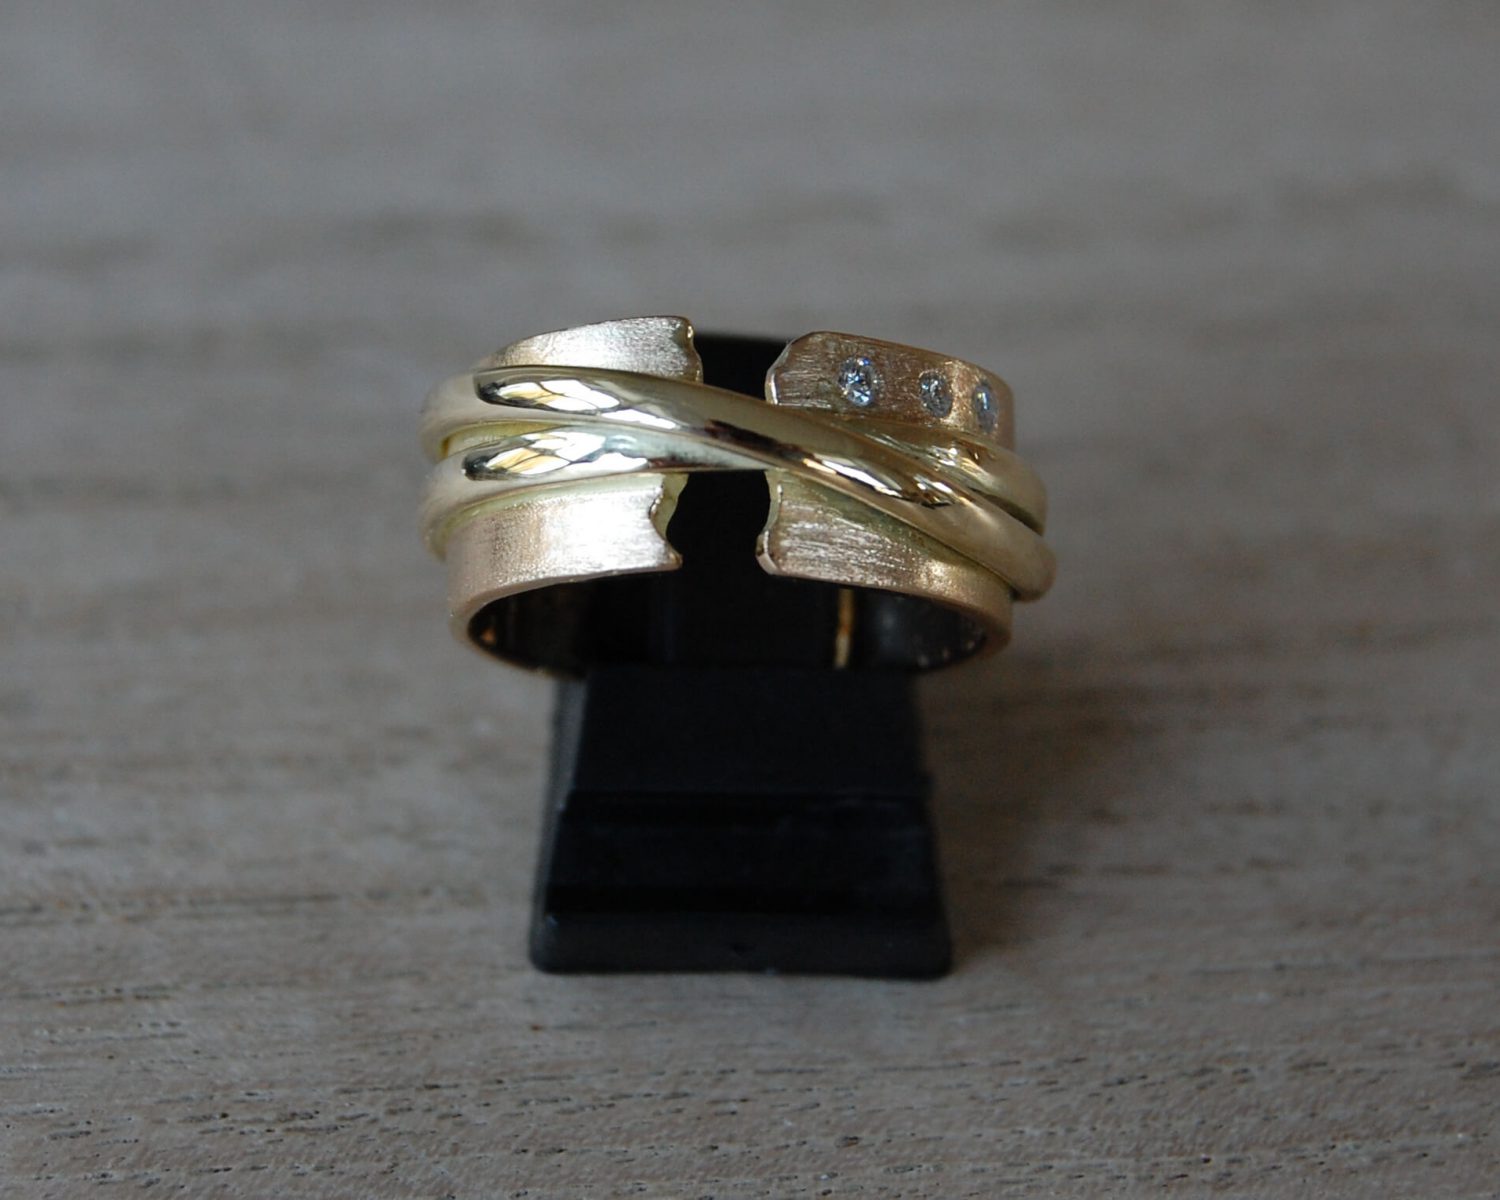 Symbolische ring uit aangeleverde 18 en 14 karaats gouden sieraden - inclusief 3 diamanten van 0,02 karaat. In de binnenzijde van de ring is wat as gezet.